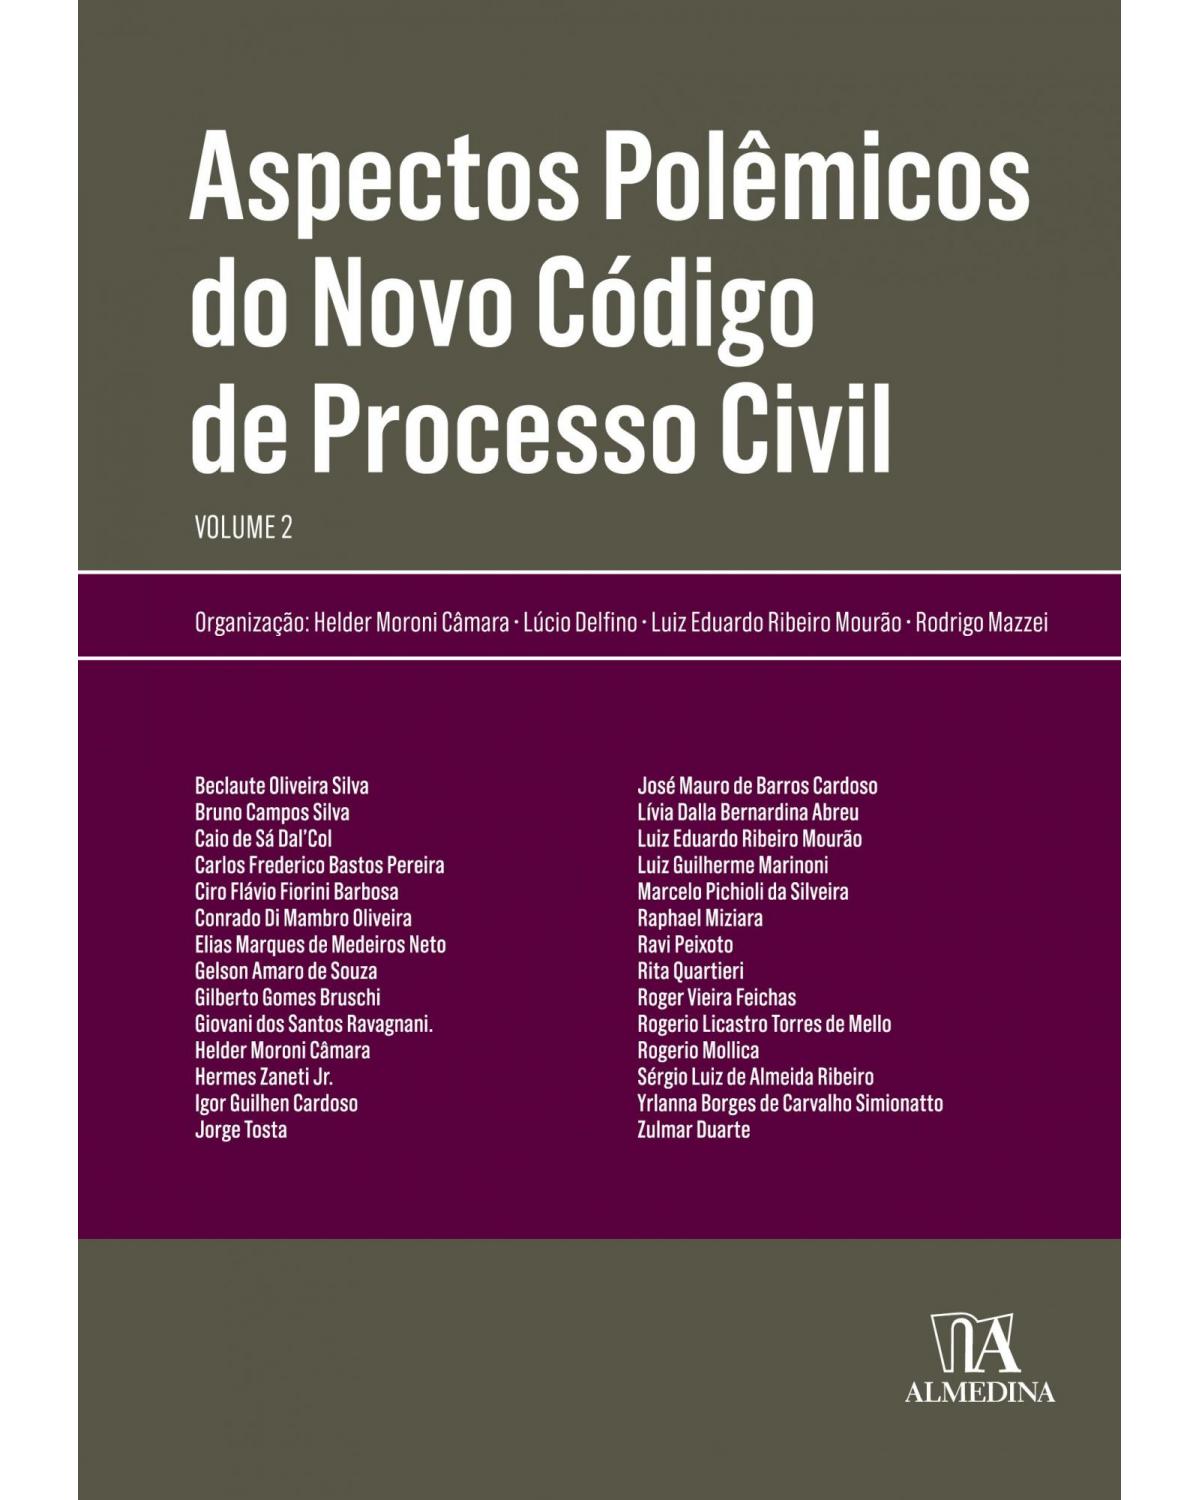 Aspectos polêmicos do novo código de processo civil - Volume 2:  - 1ª Edição | 2018